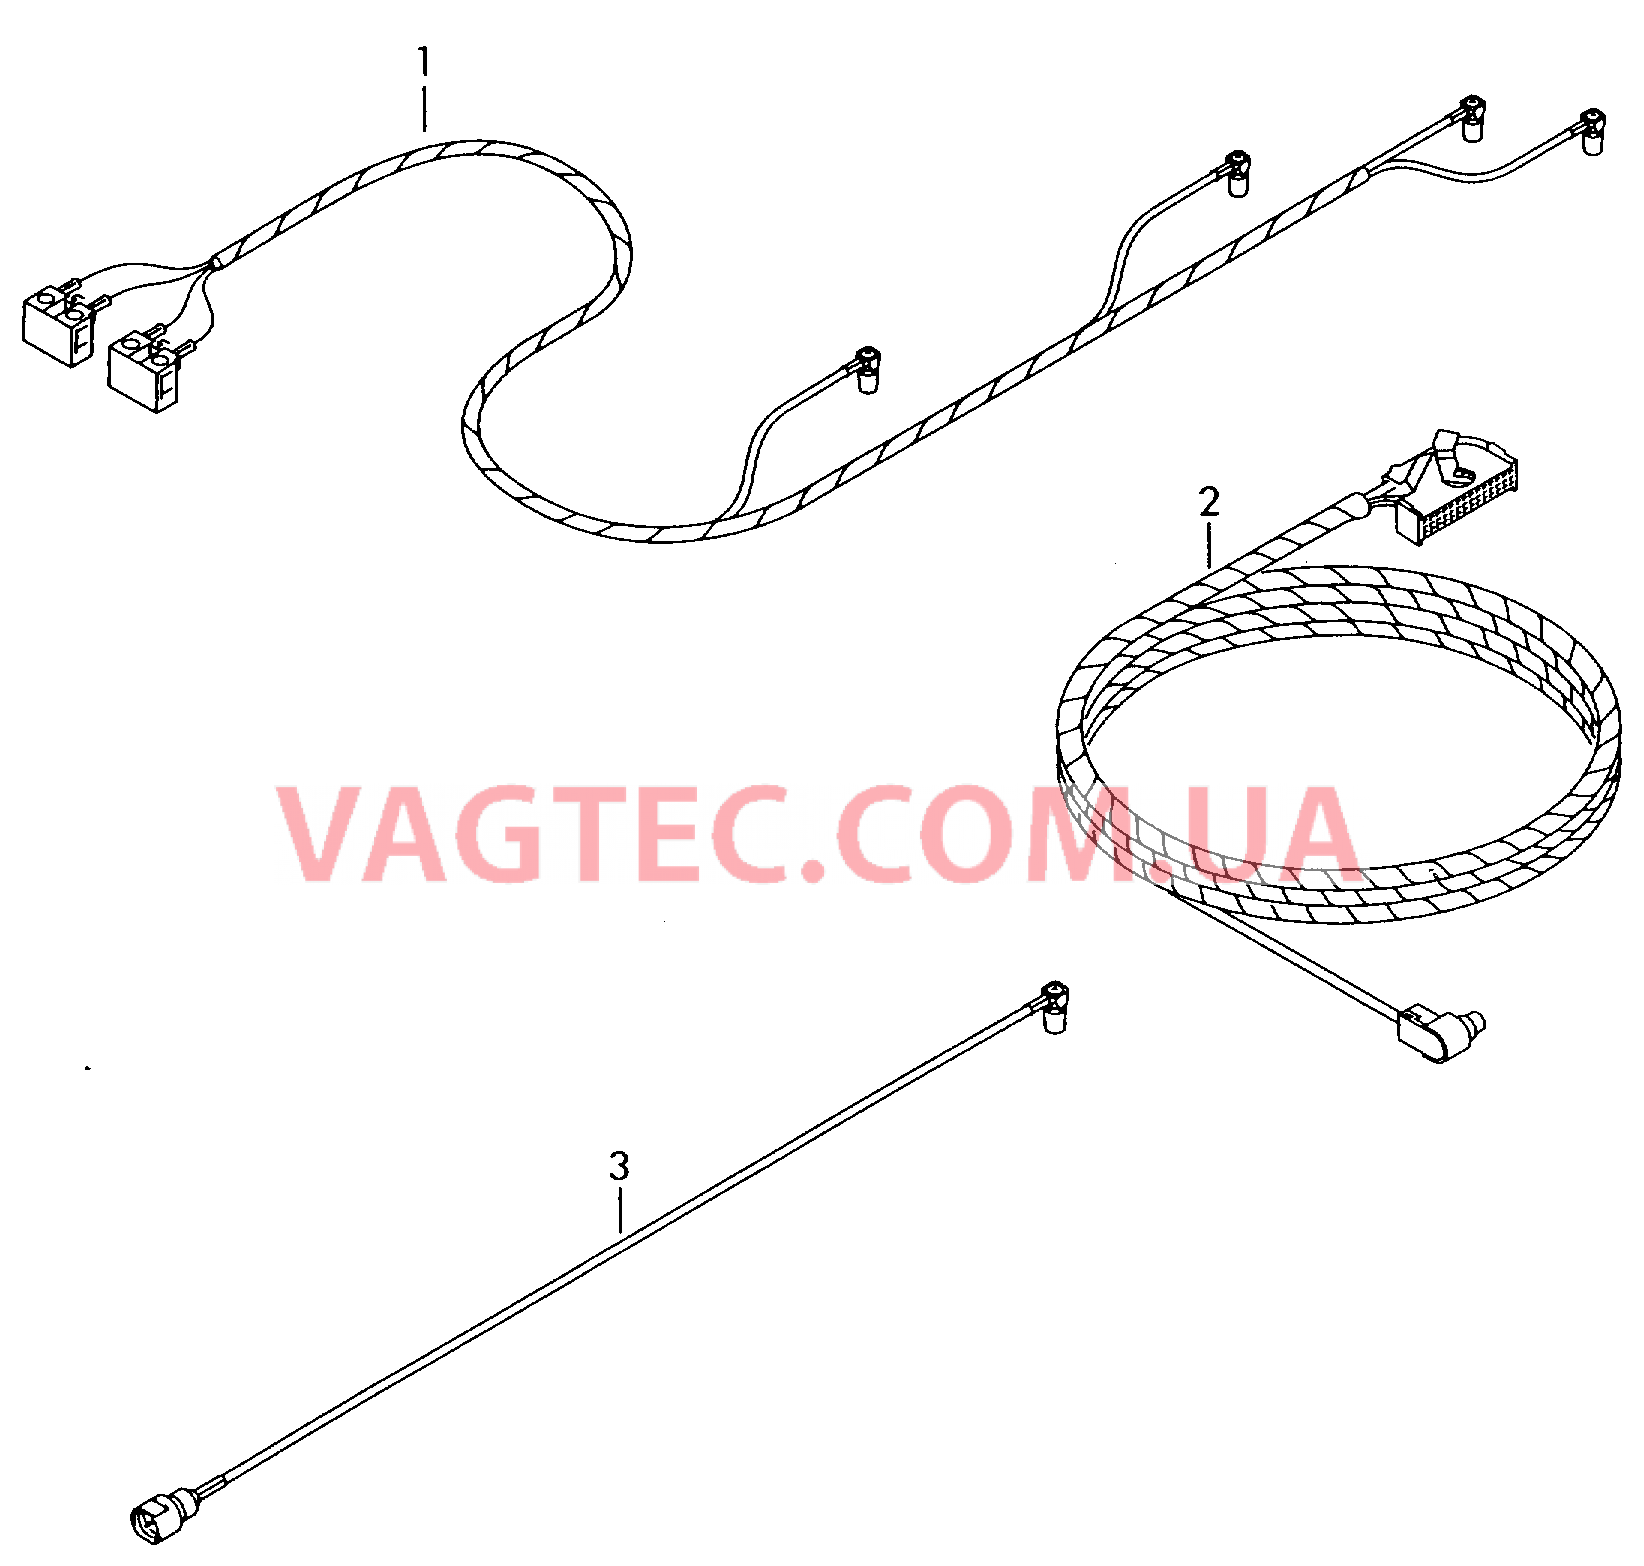 Жгут проводов системы навигации  Антенный кабель Жгут проводов для а/м с комплектом для подключения телефона         также см. иллюстрацию:  для VOLKSWAGEN Passat 2003